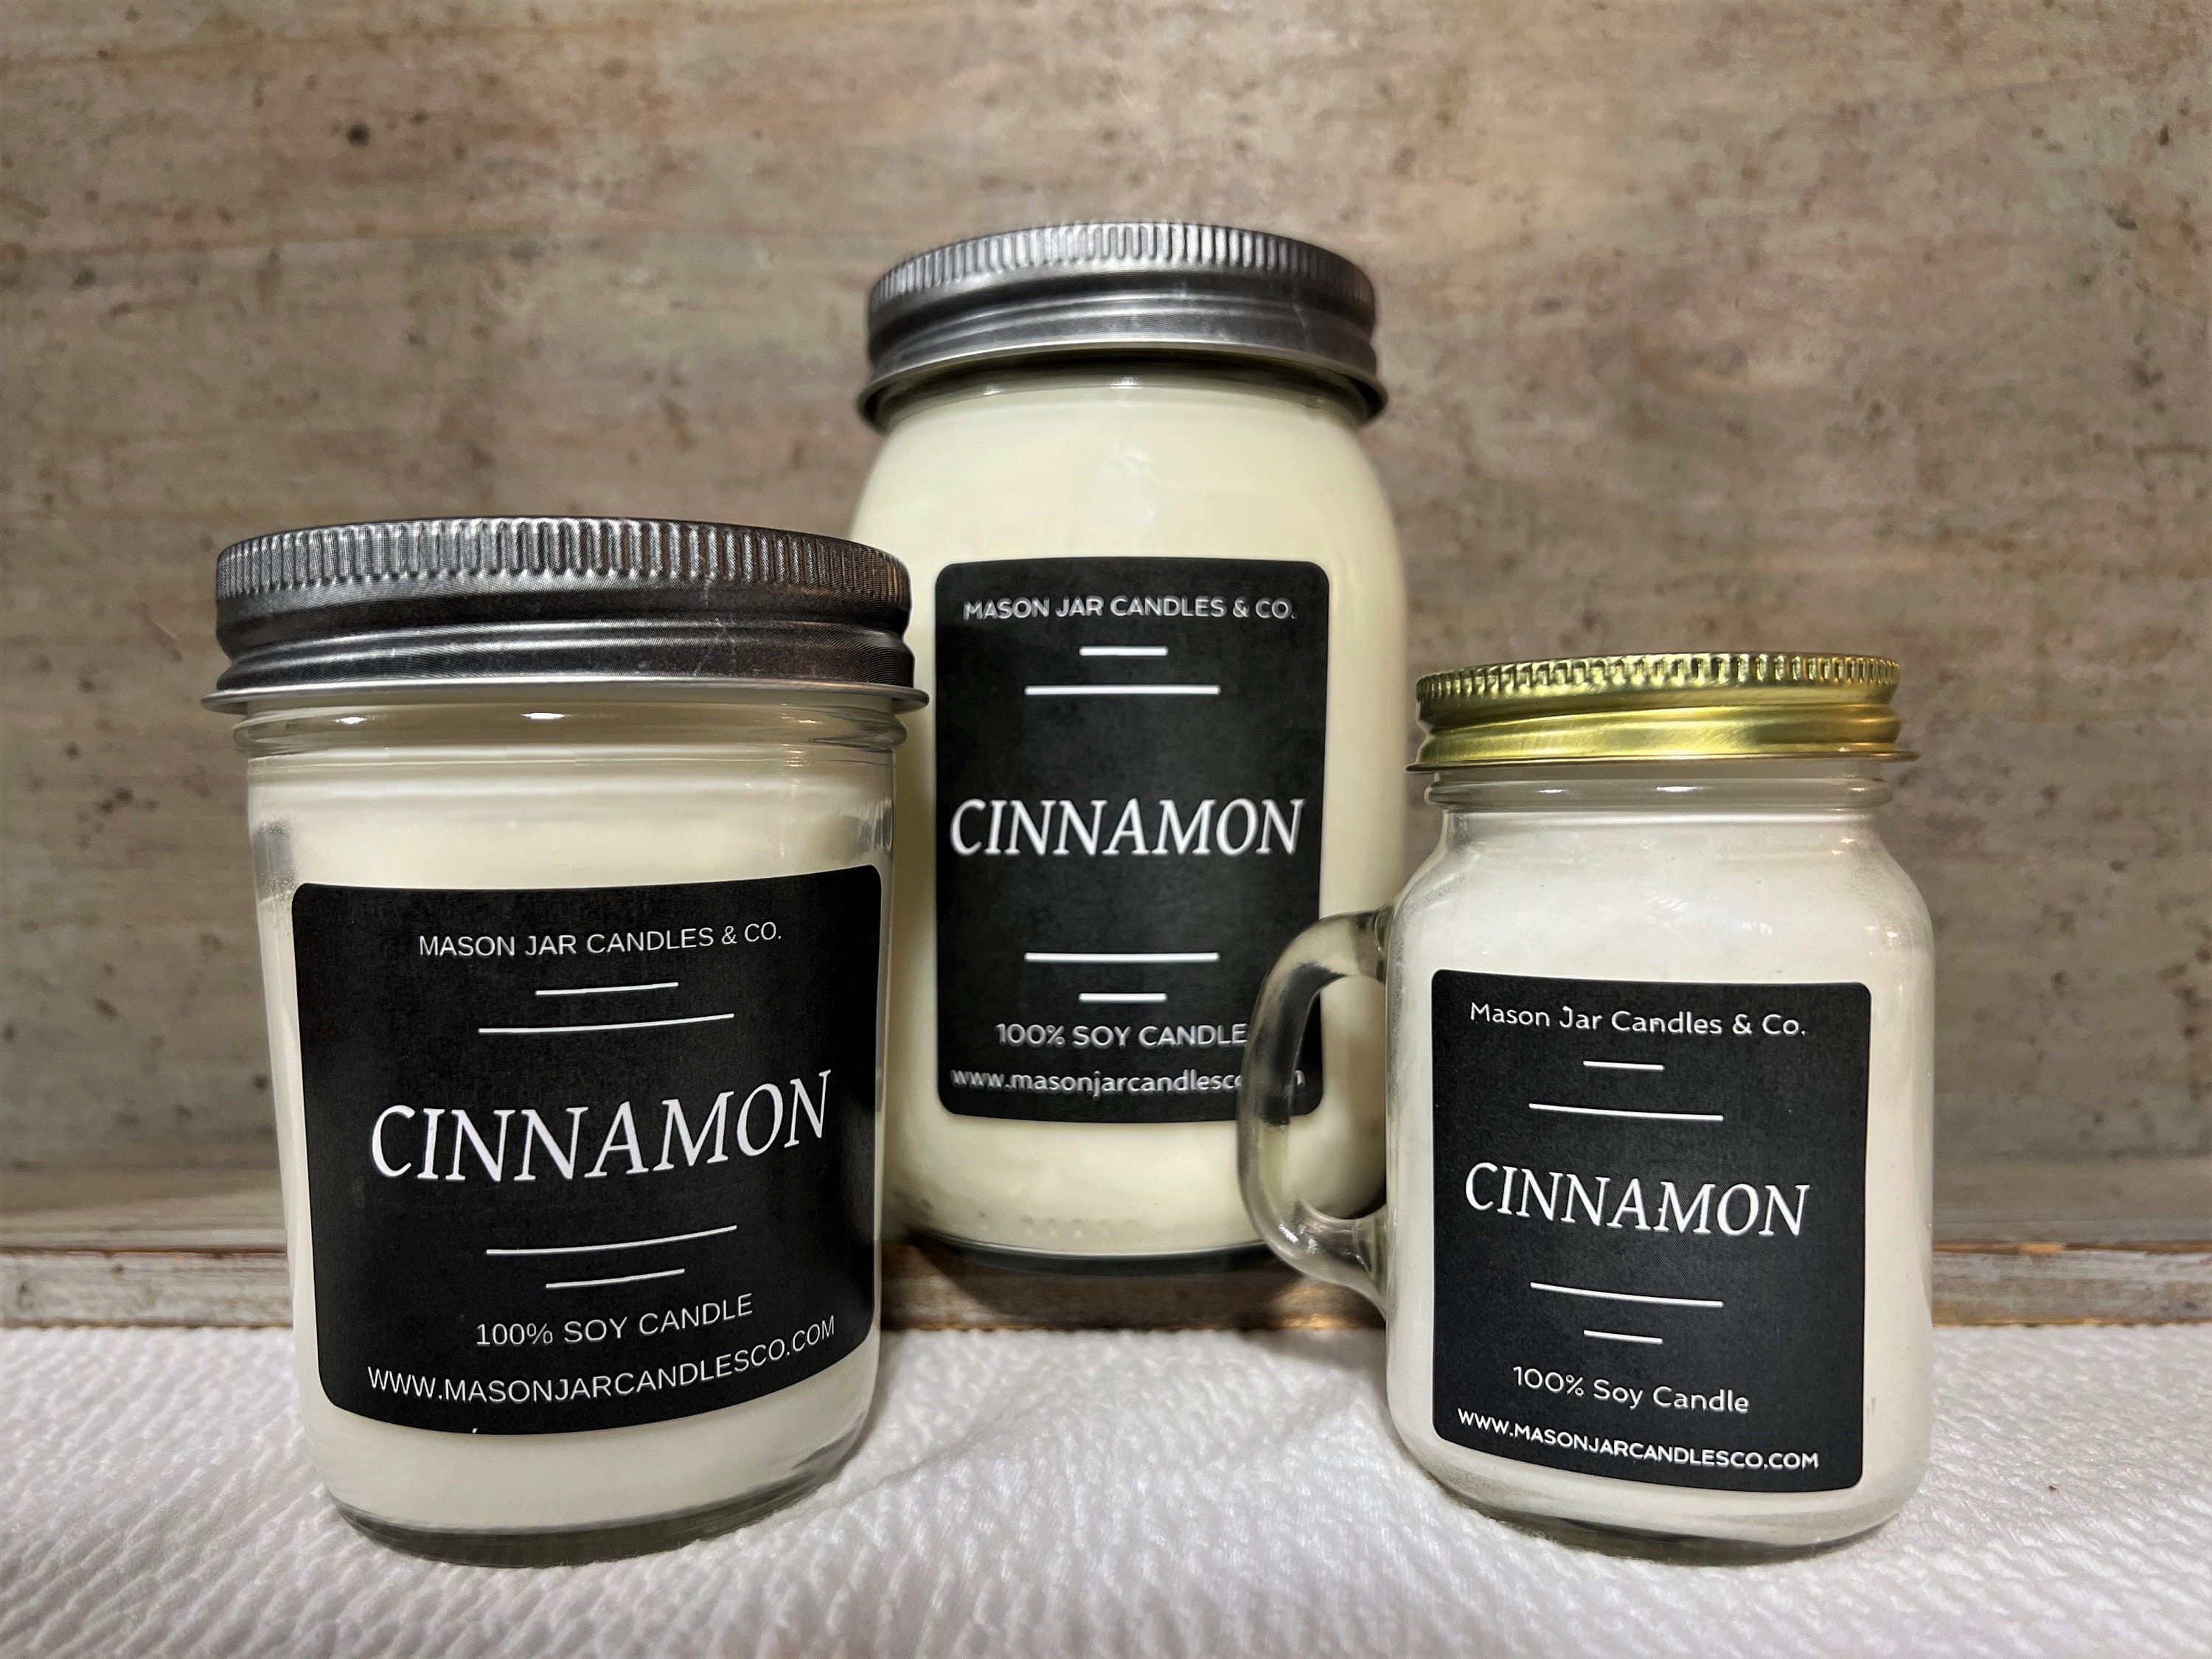 Autumn Leaves 16 oz Mason Jar candle – Farmhouse Candle Company